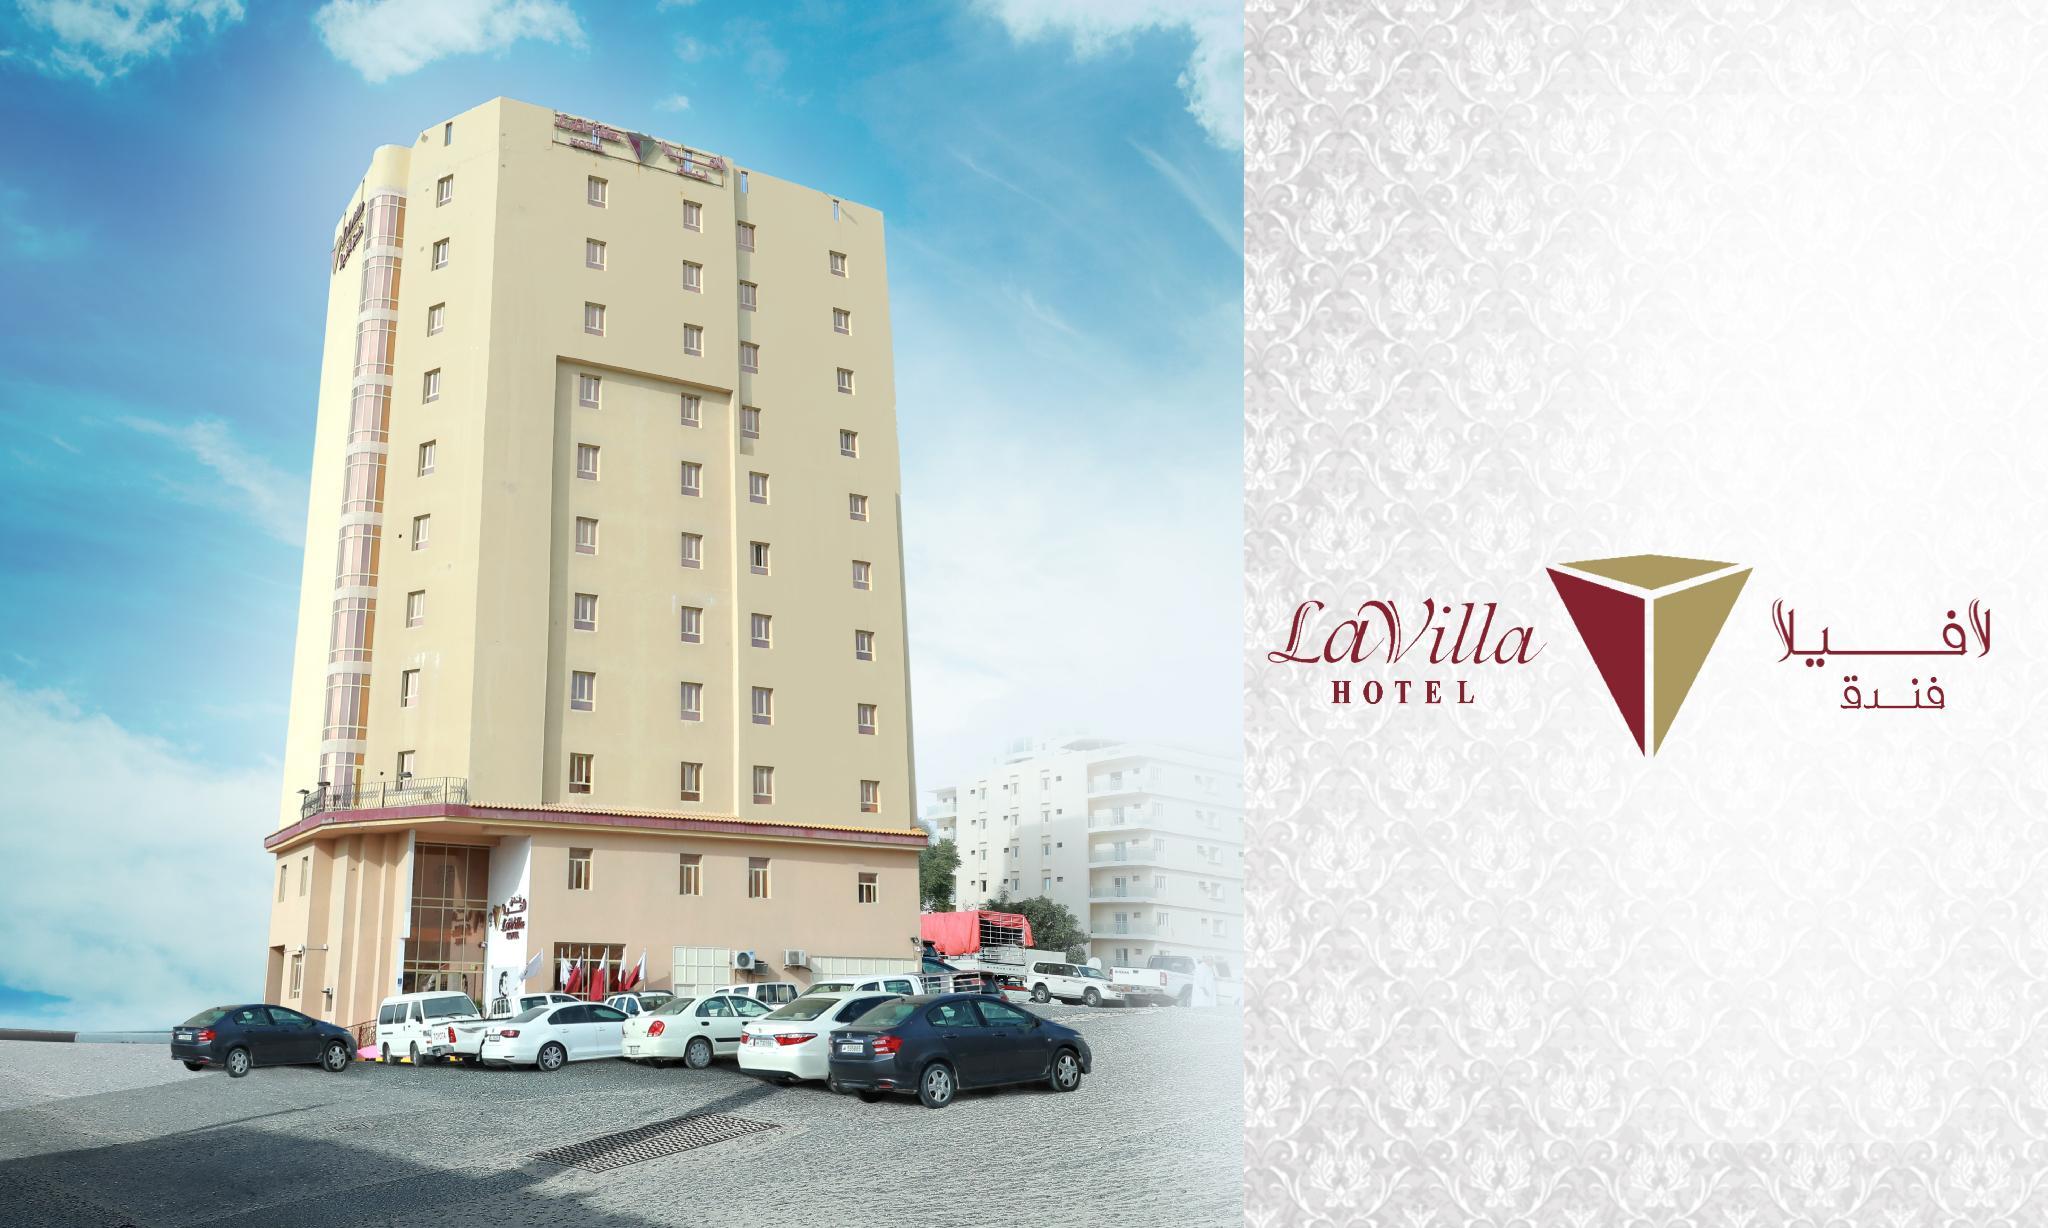 La Villa Hotel image